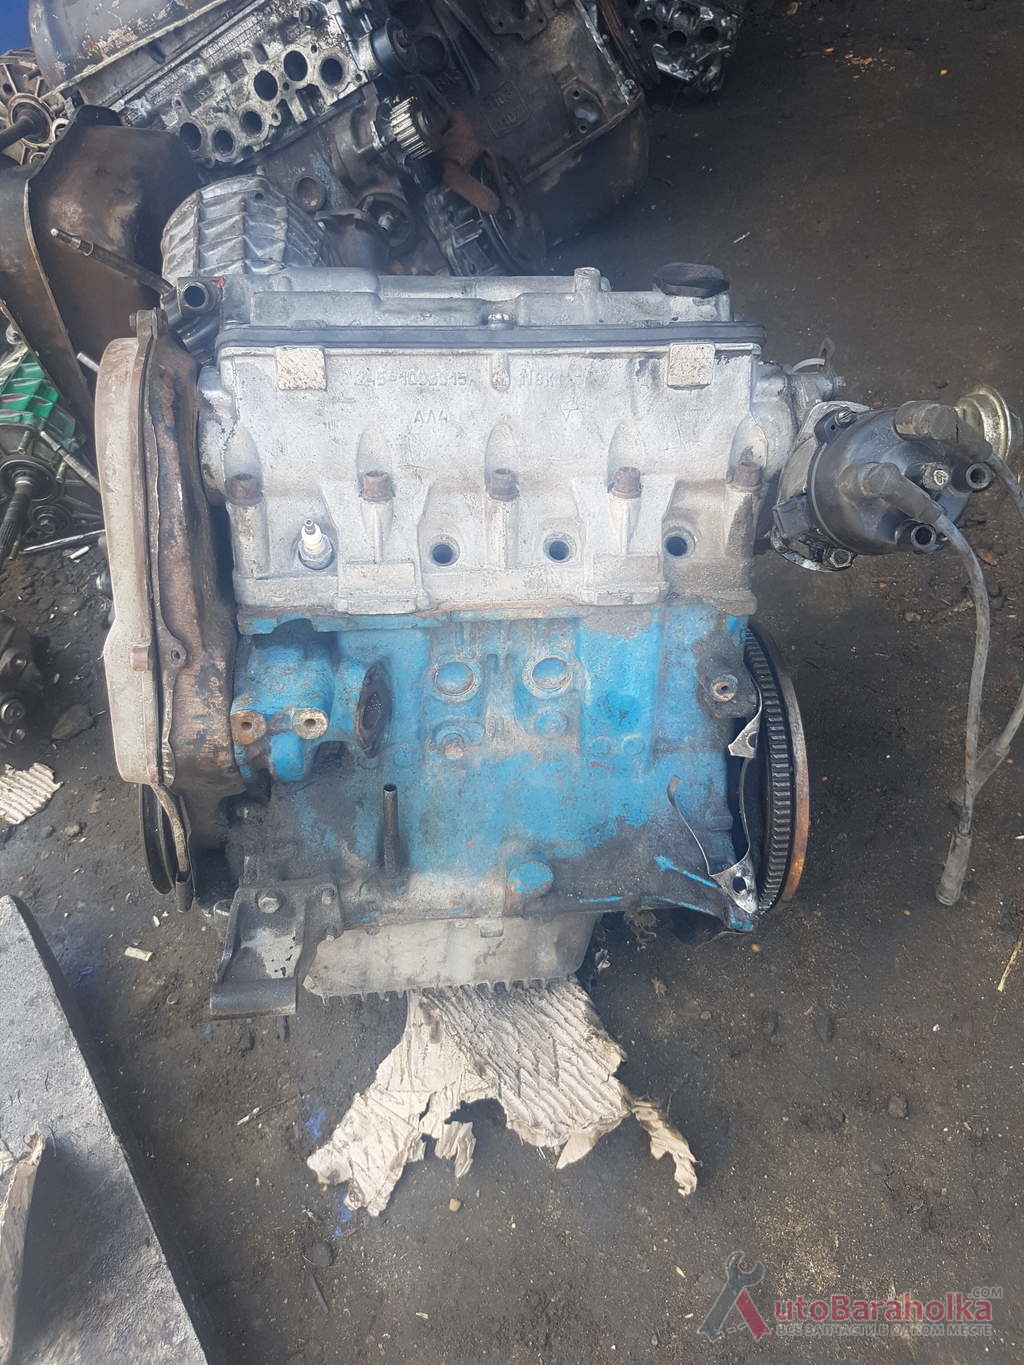 Продам двигатель таврия рабочий не вскрывался снят с машины укомплектован Белгород -Днестровск